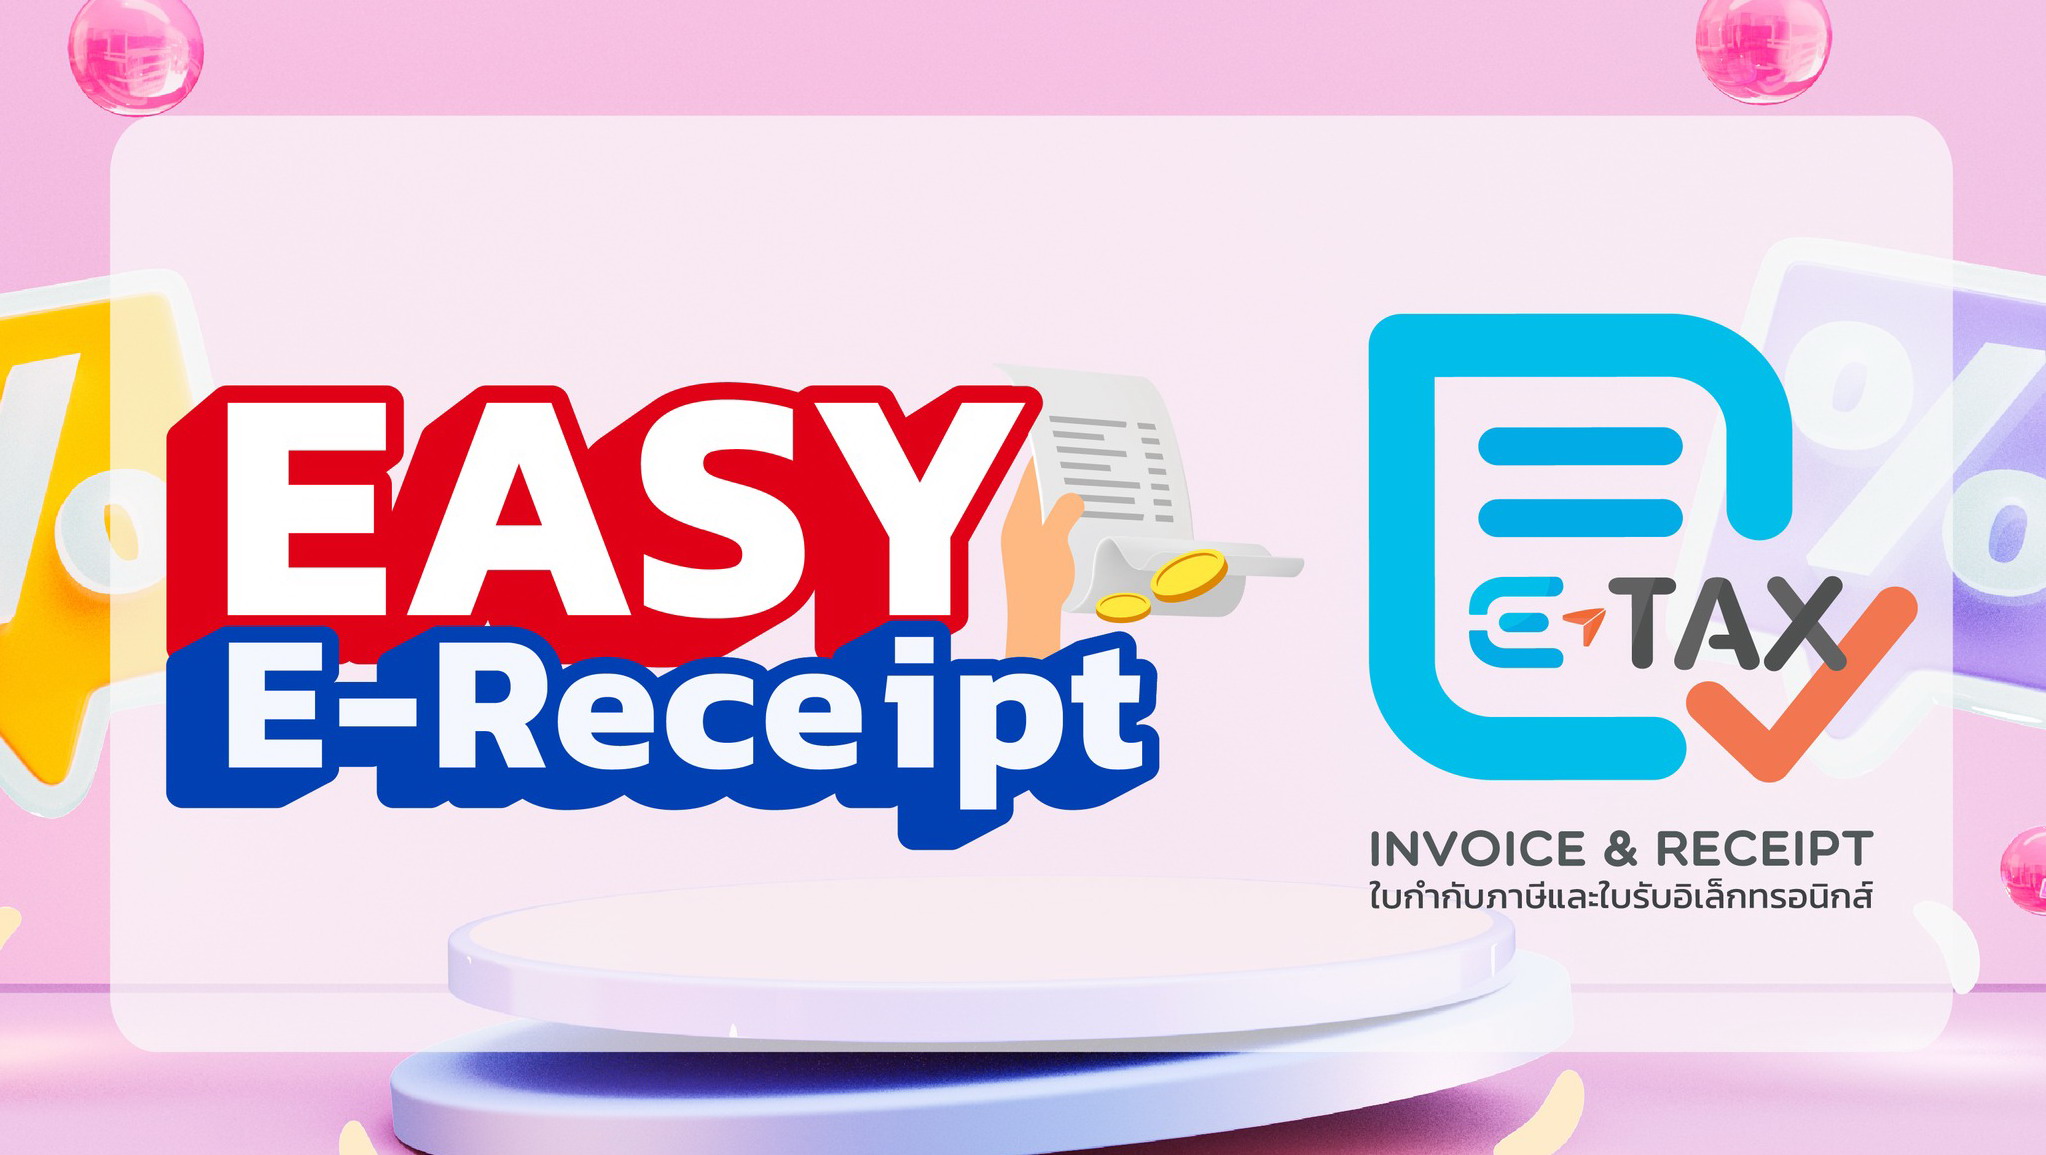 กรมสรรพากรเผยหลักเกณฑ์มาตรการ “Easy E-Receipt” ลดหย่อนสูงสุด 50,000 บาท เริ่ม 1 มกราคม 2567 ถึง 15 กุมภาพันธ์ 2567 เฉพาะที่ได้รับ e-Tax Invoice หรือ e-Receipt เท่านั้น